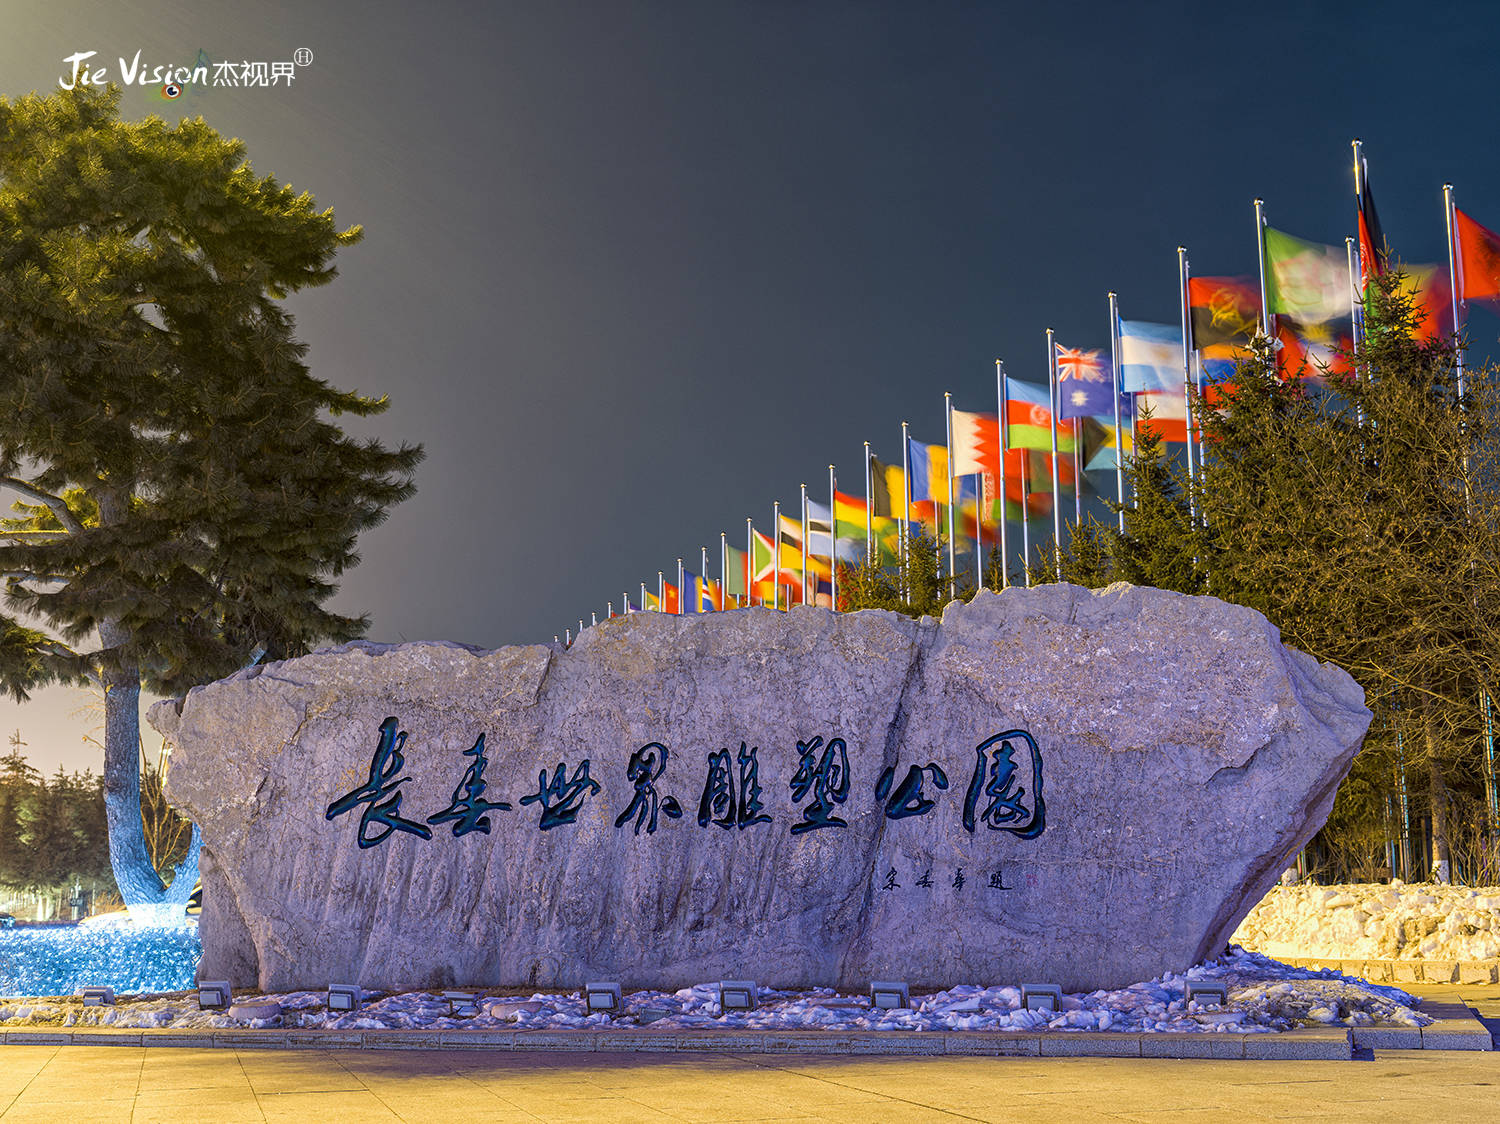 罗丹《思想者》的中国新家 洽谈三年 耗资百万 长春国际雕塑园